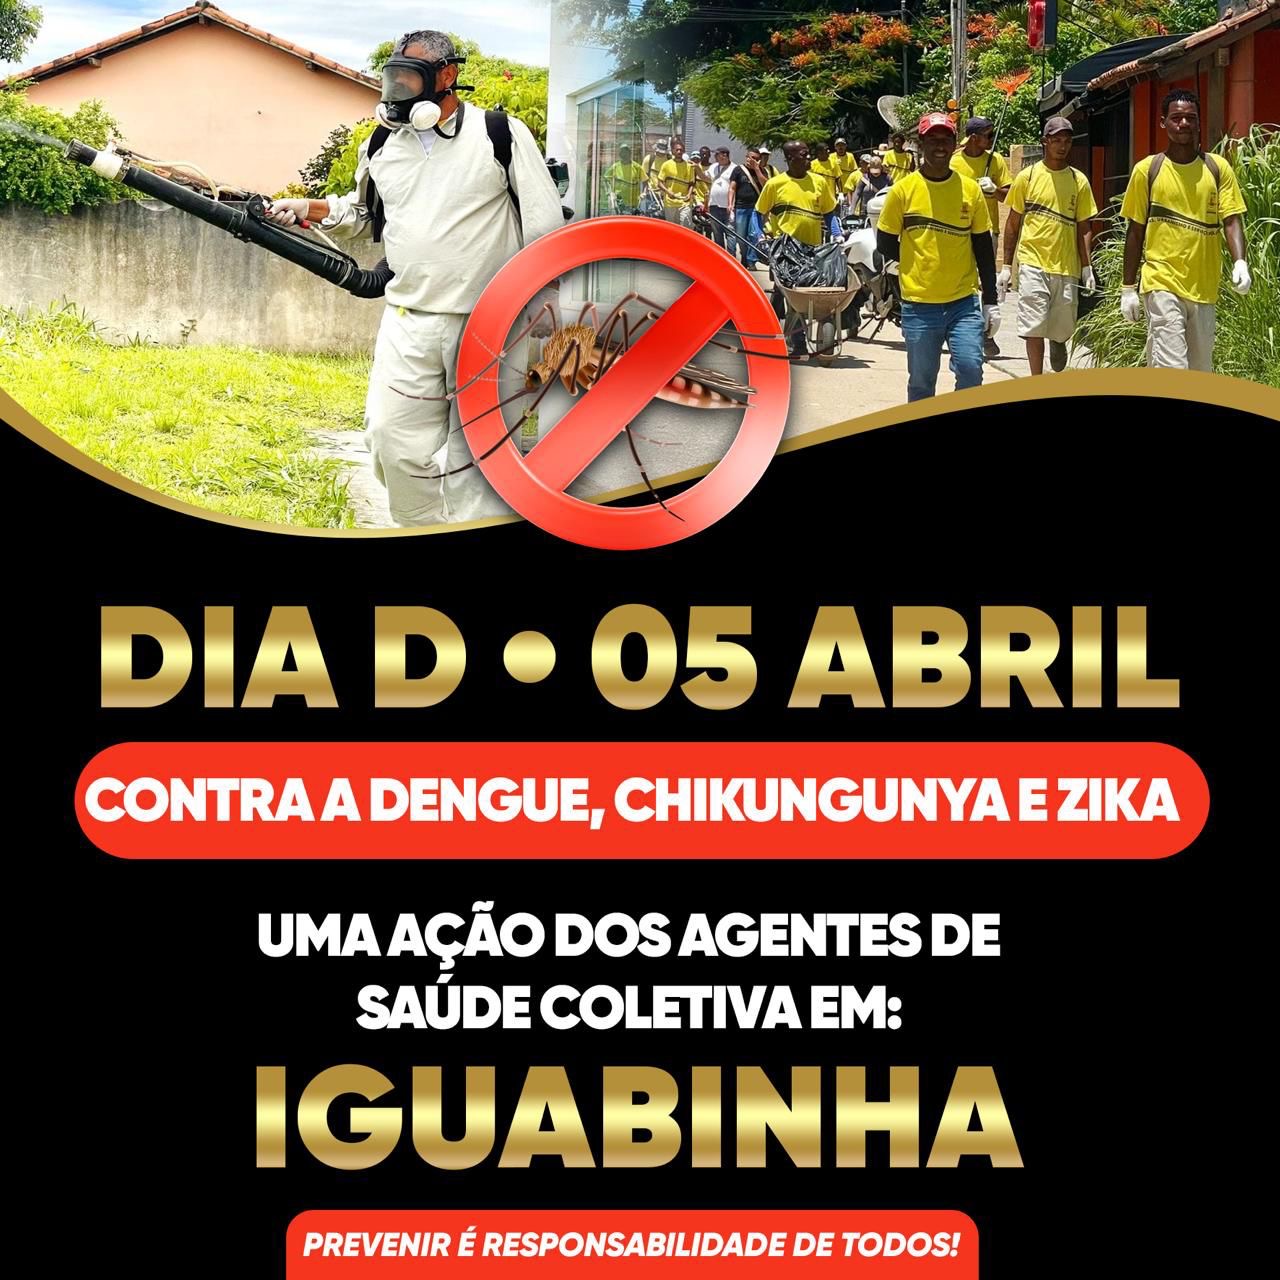 Prefeitura vai realizar o Dia D contra a dengue no distrito de Iguabinha, nessa sexta-feira, 05